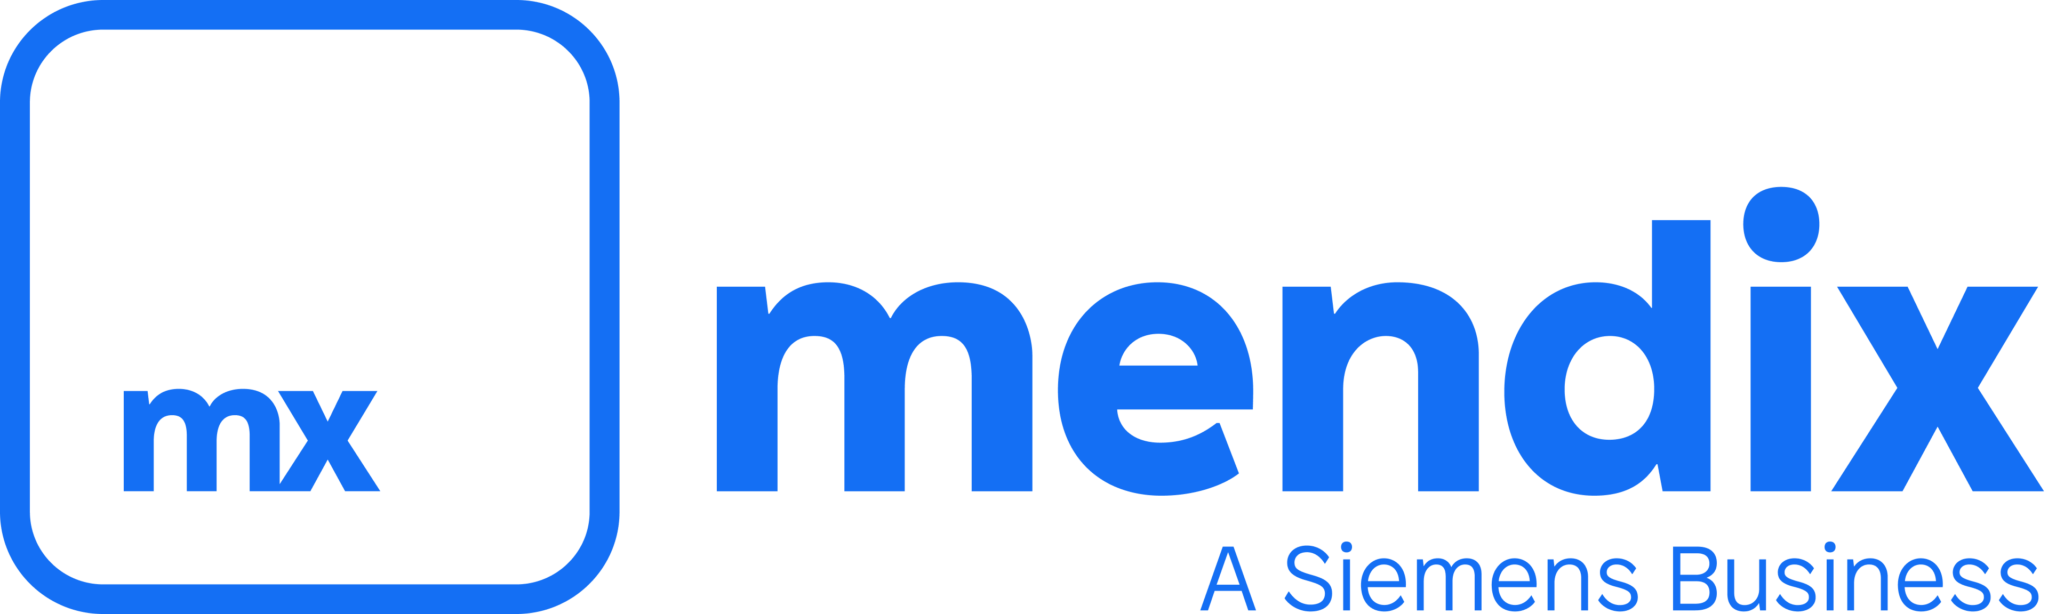 Mendix-Siemens-Tagline-RGB-Blue-ExtraLarge-2048x614